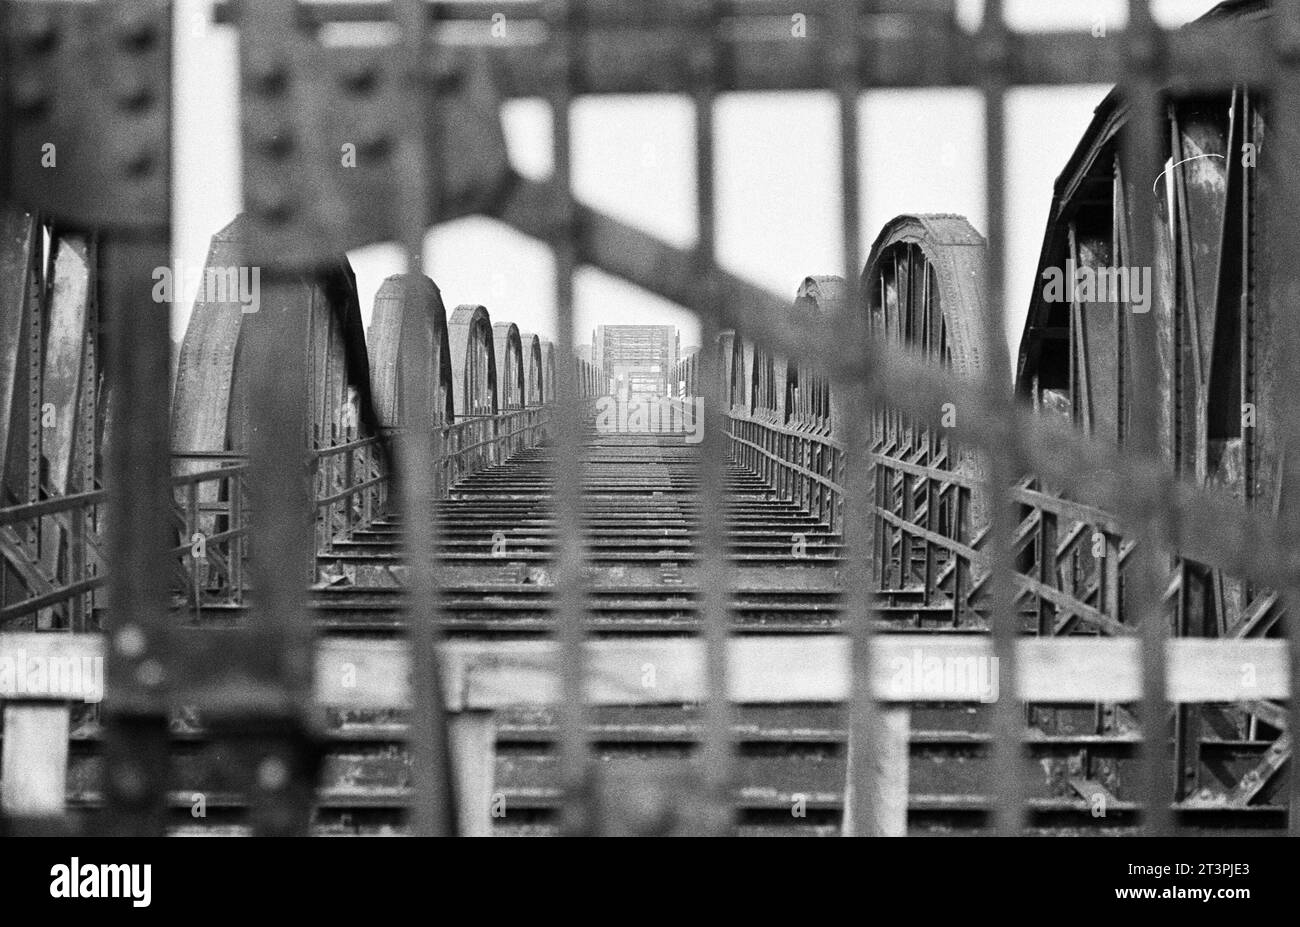 Archivfoto aus dem Juli 1978 von der Dömitzer Eisenbahnbrücke. Die schnelle einen Kilometer lange Elbquerung wurde 1870 - 1873 gebaut, war Teil der West-Ost-Bahnstrecke Lüneburg - Wittenberge und wurde 1945 durch einen Luftangriff teilweise zerstört. Wegen der deutschen Teilung lag sie fortan im Grenzgebiet und wurde nicht instandgesetzt. Wegen Einsturzgefahr wurden drei Brückenteile 1978 abgebaut und mit Pontons abtransportiert, wobei zahlreiche Schaulustige zusahen. *** Archivfoto vom Juli 1978 der Dömitzer Eisenbahnbrücke der knapp einen Kilometer lange Elbübergang wurde 1870 in 1 gebaut Stockfoto